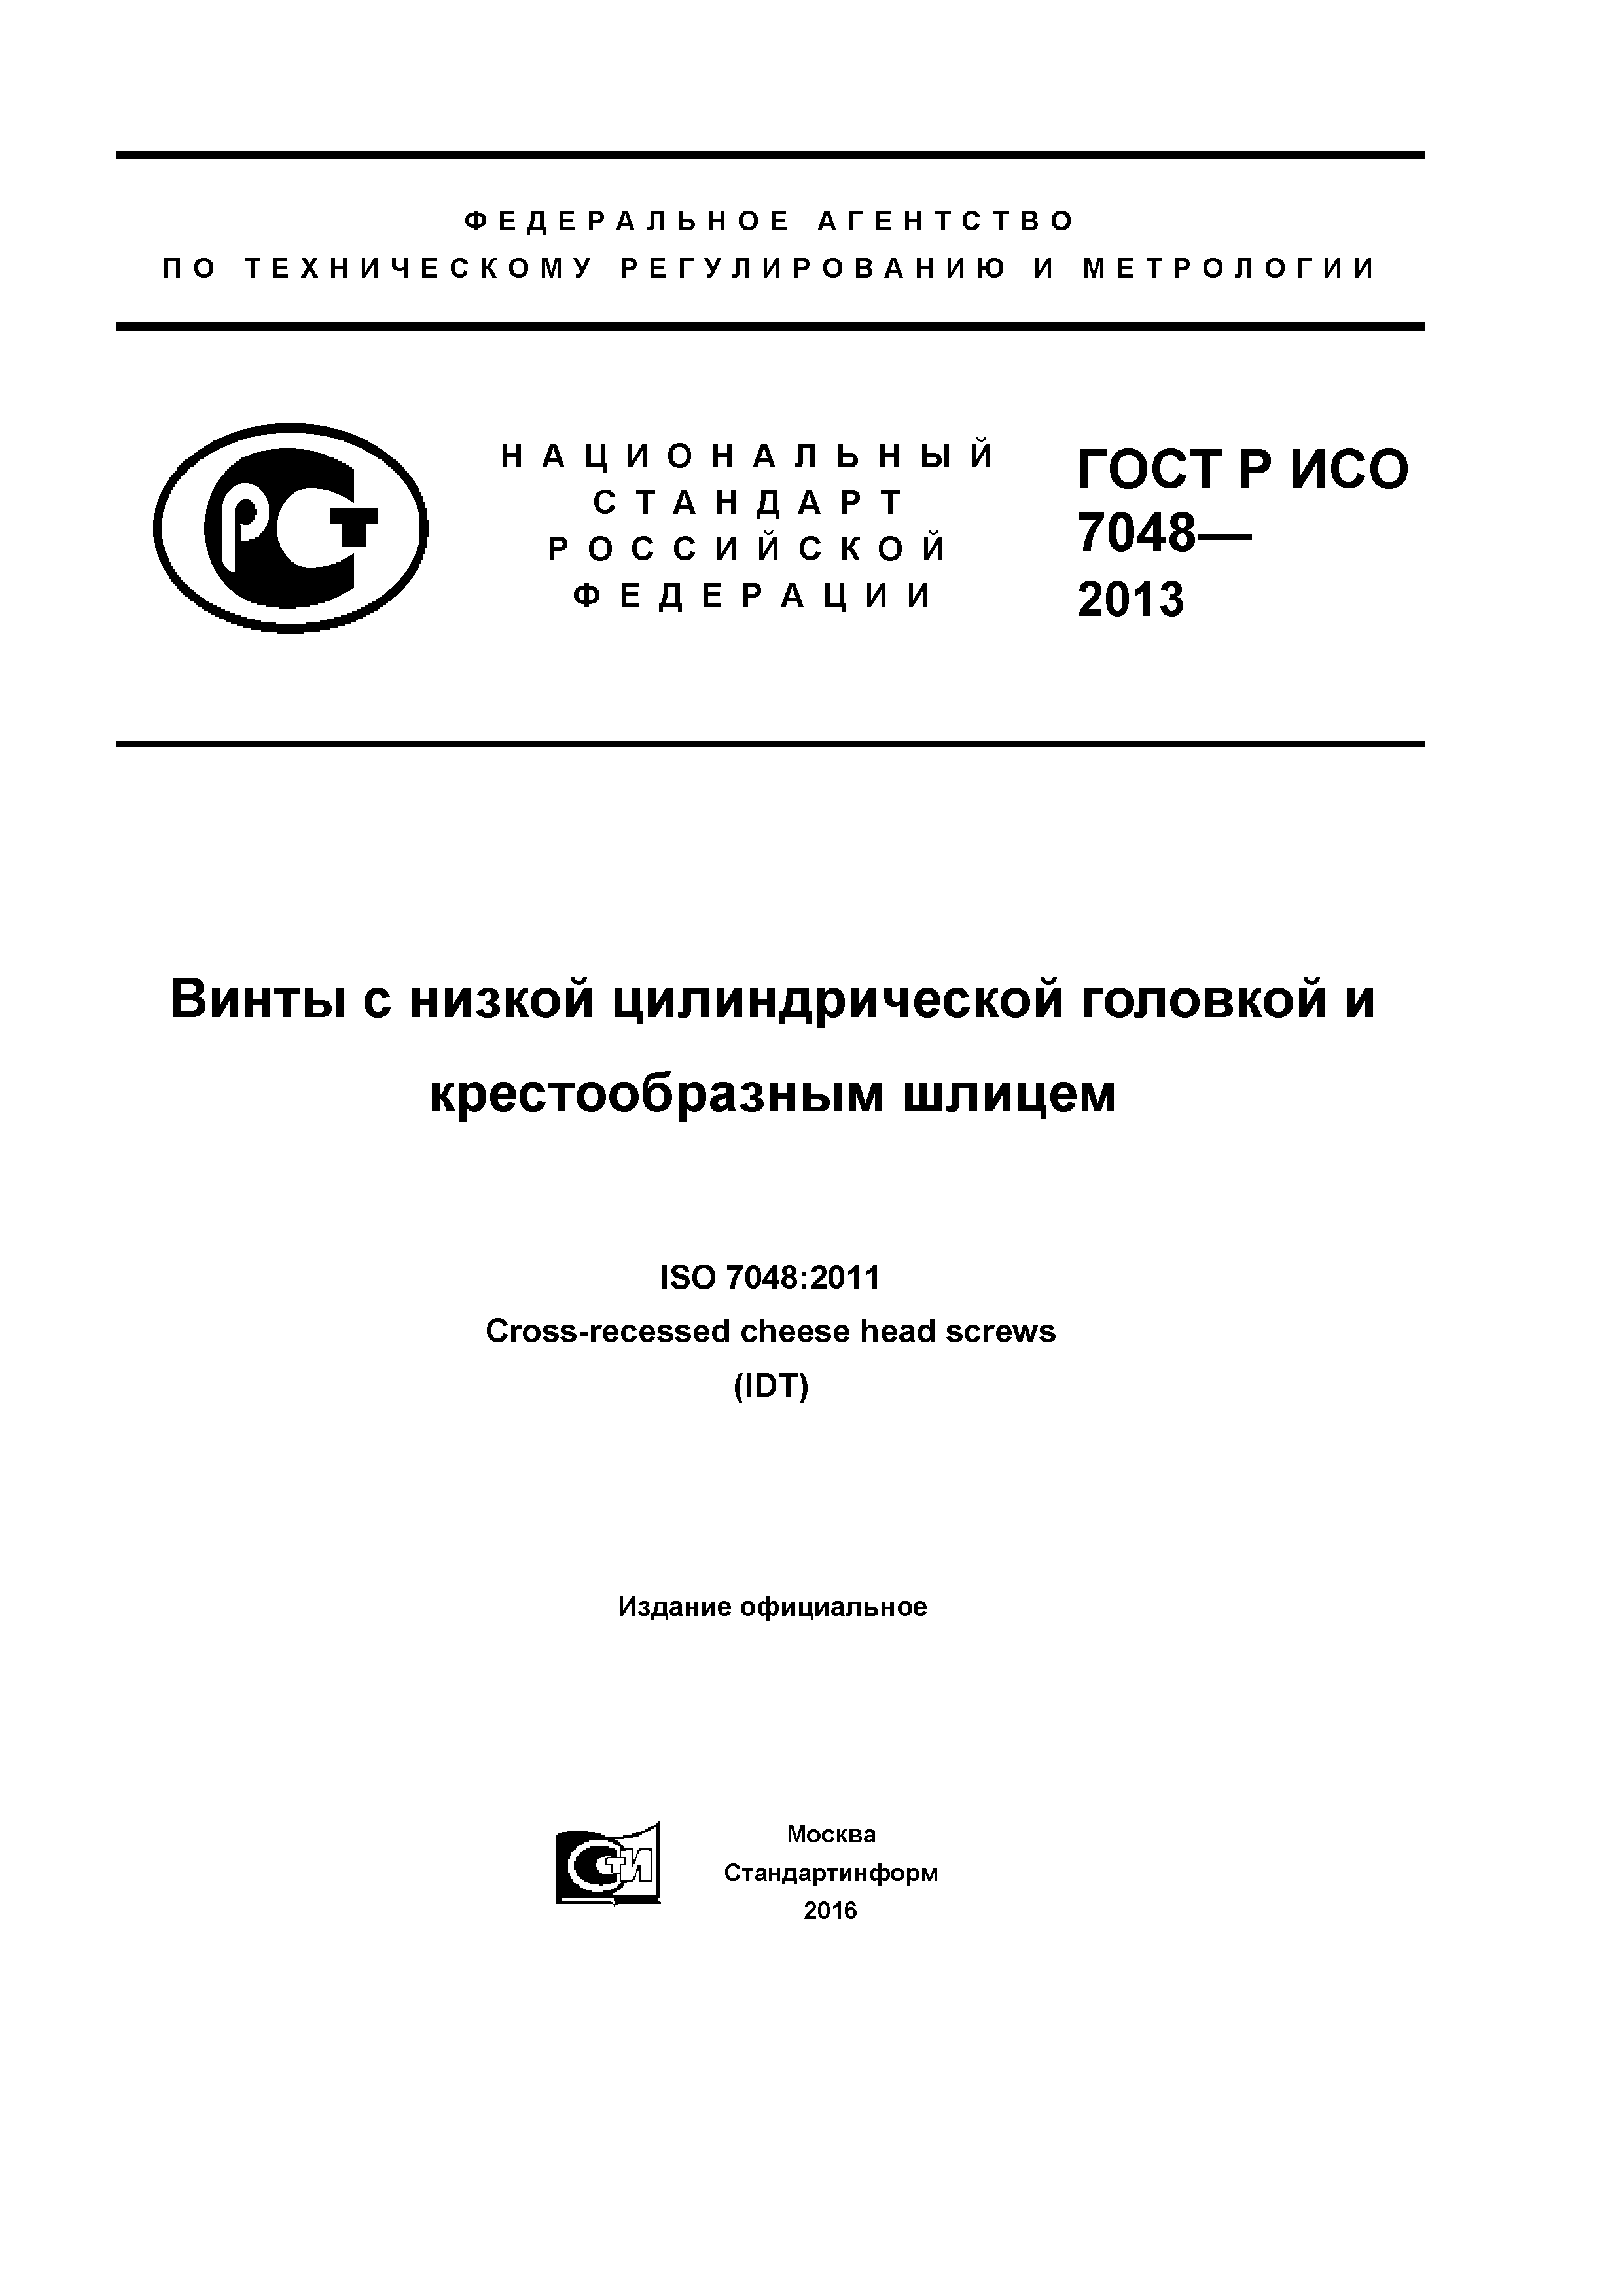 ГОСТ Р ИСО 7048-2013